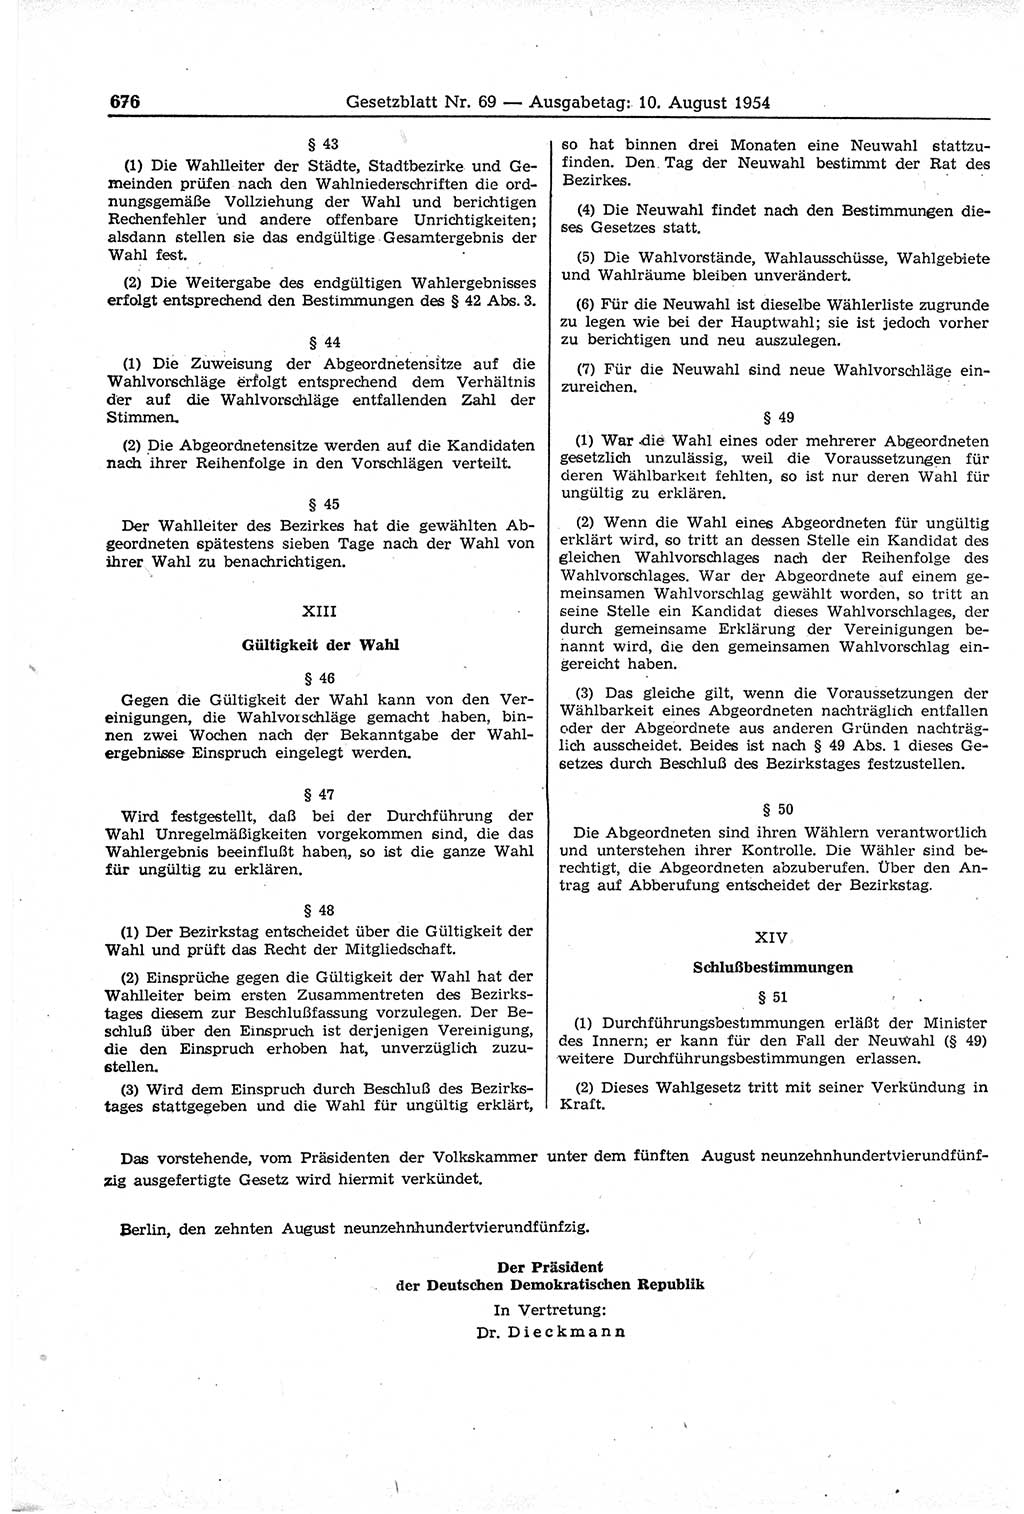 Gesetzblatt (GBl.) der Deutschen Demokratischen Republik (DDR) 1954, Seite 676 (GBl. DDR 1954, S. 676)